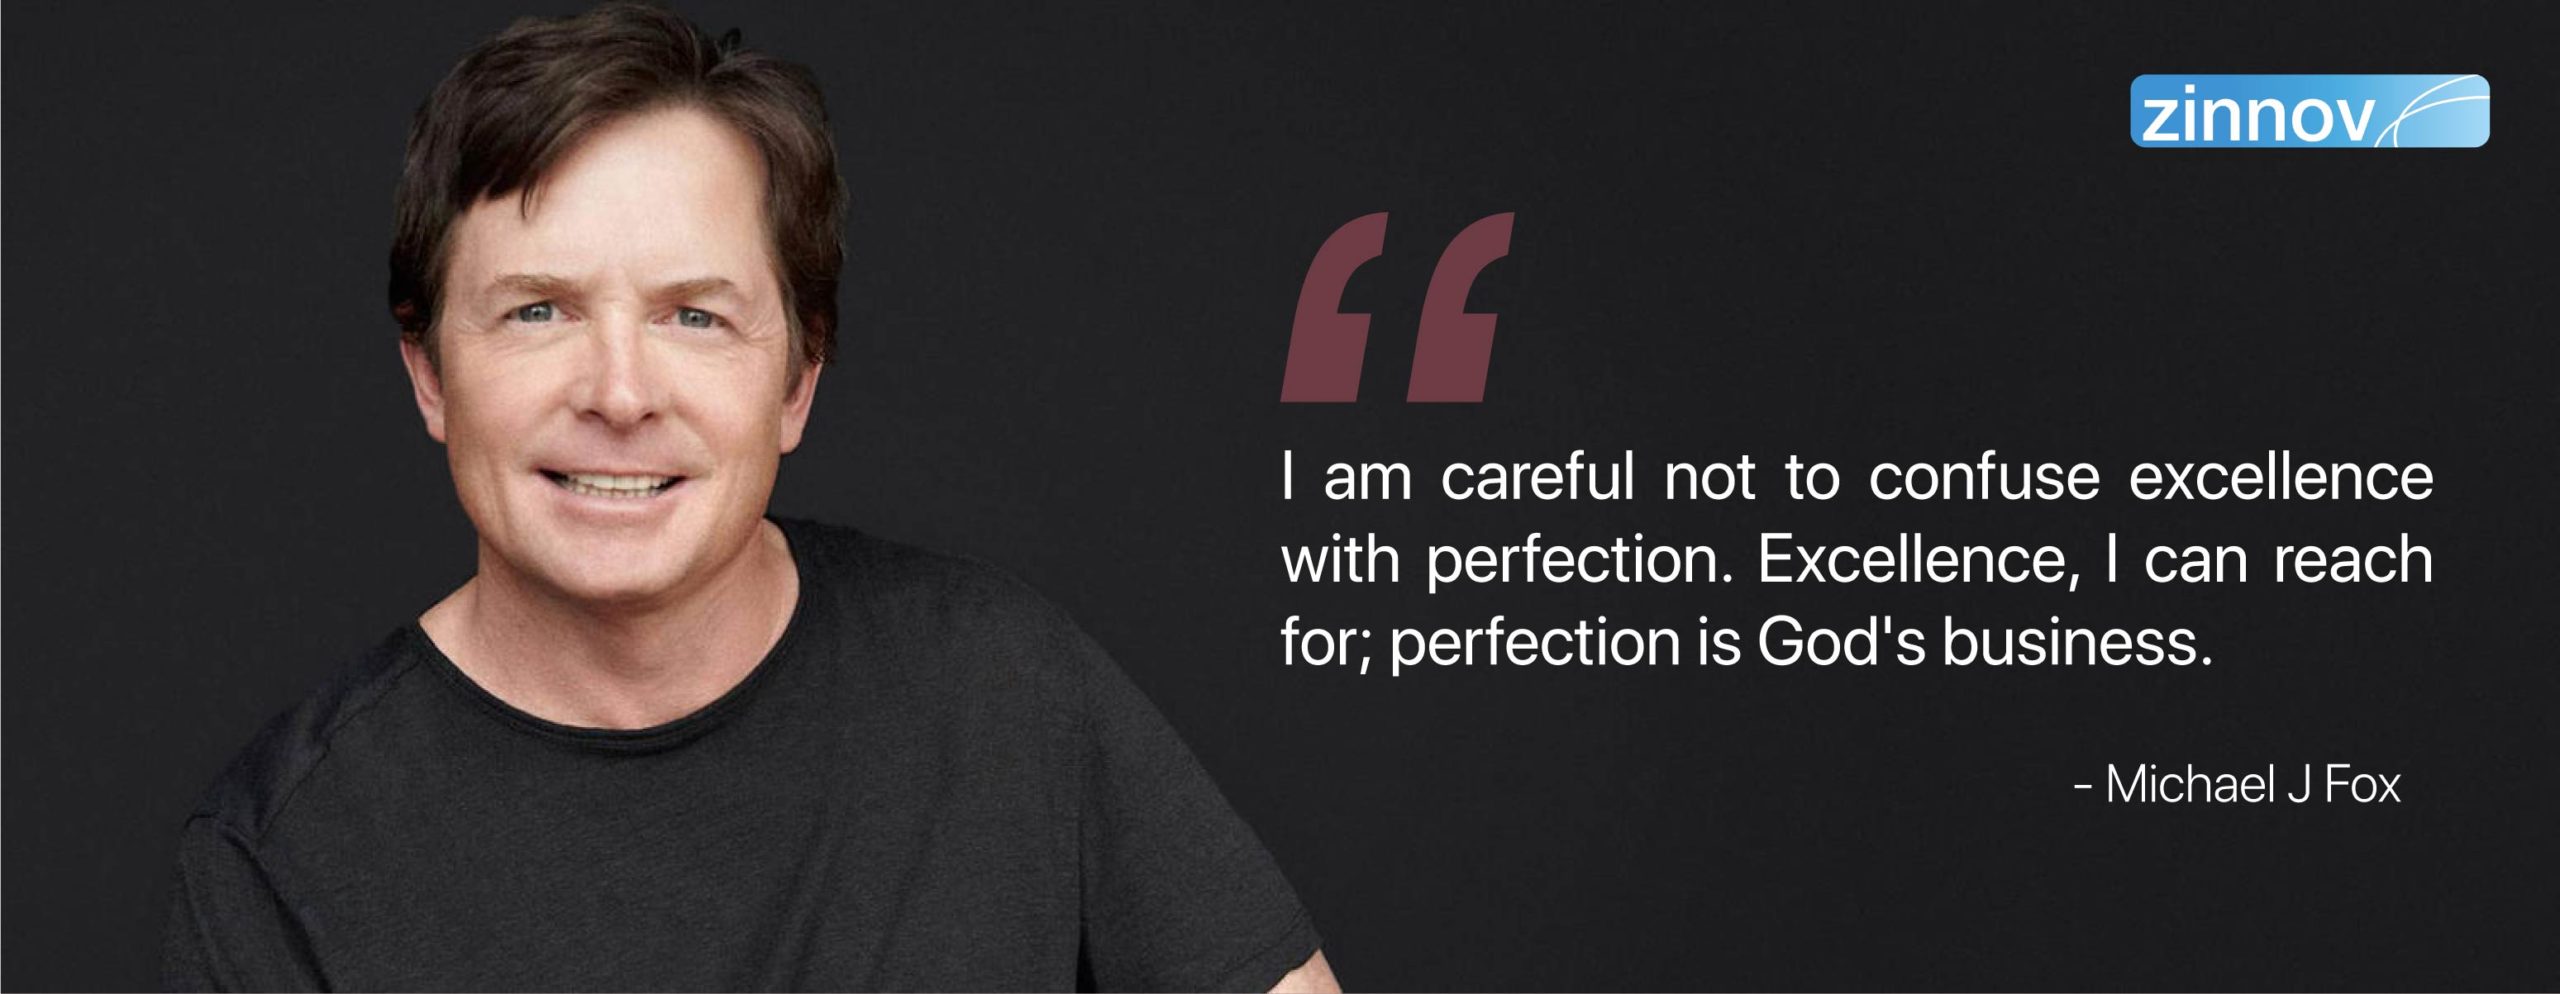 Michael J Fox's quote